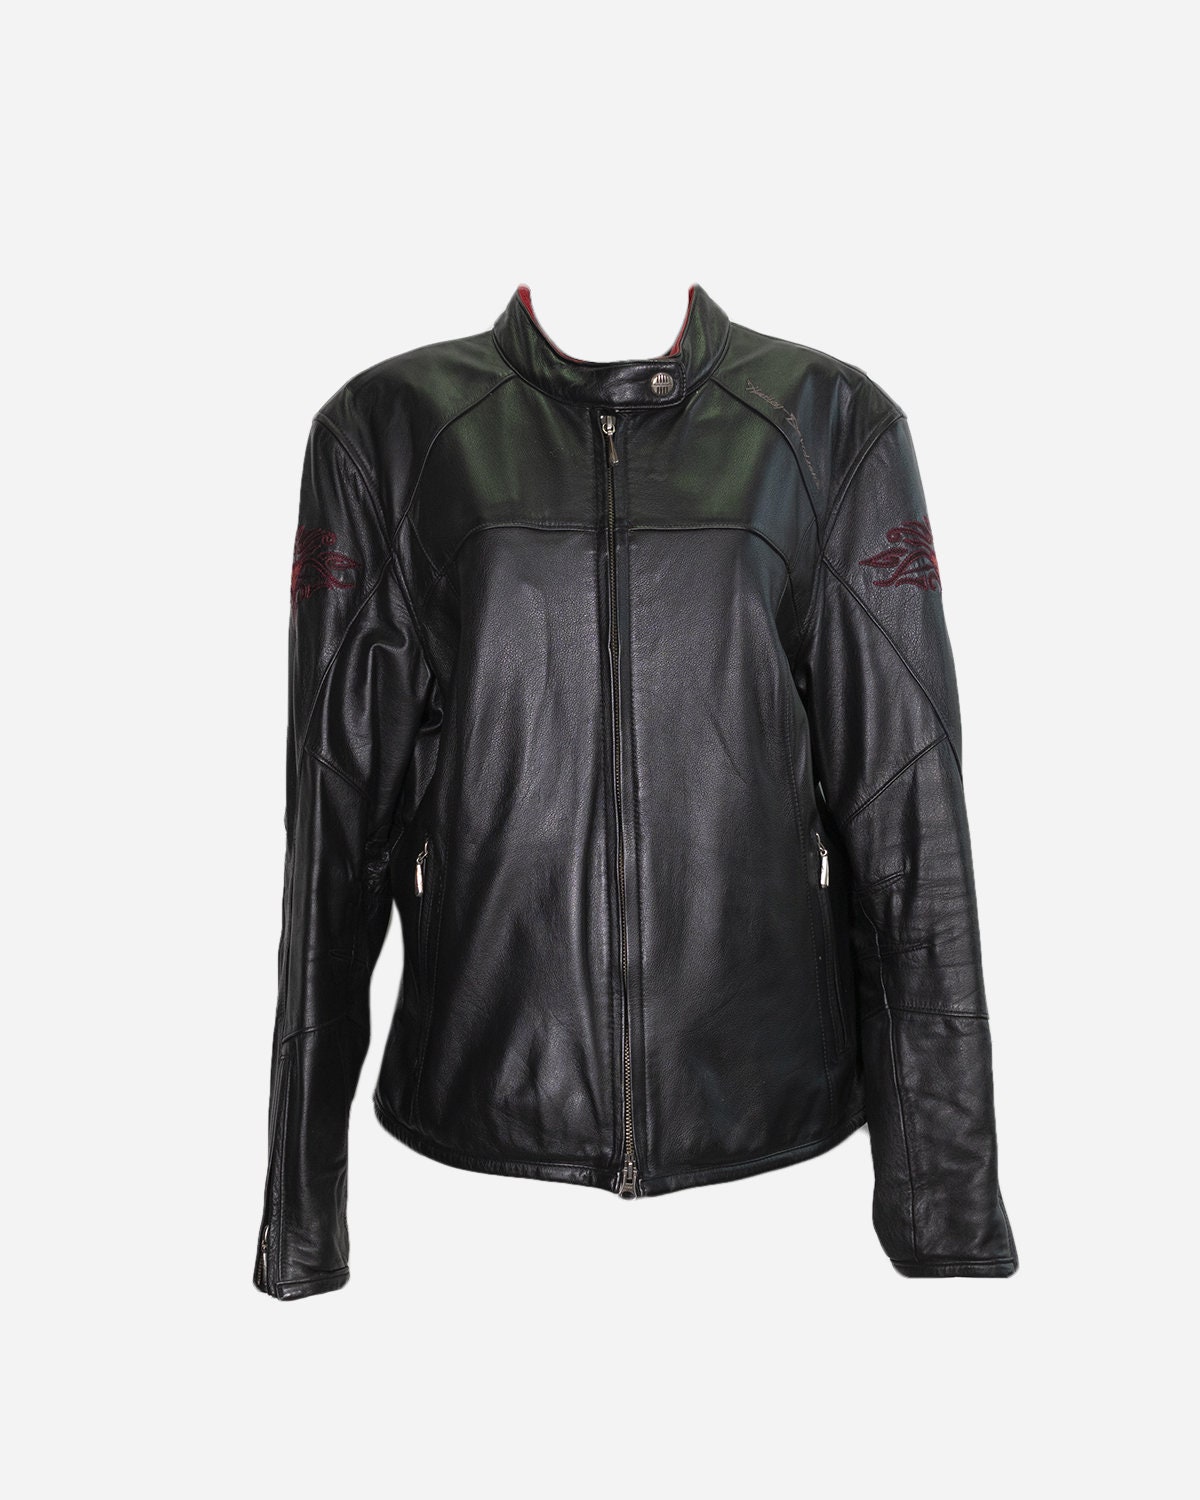 HARLEY DAVIDSON Leather Jacket - Etsy UK